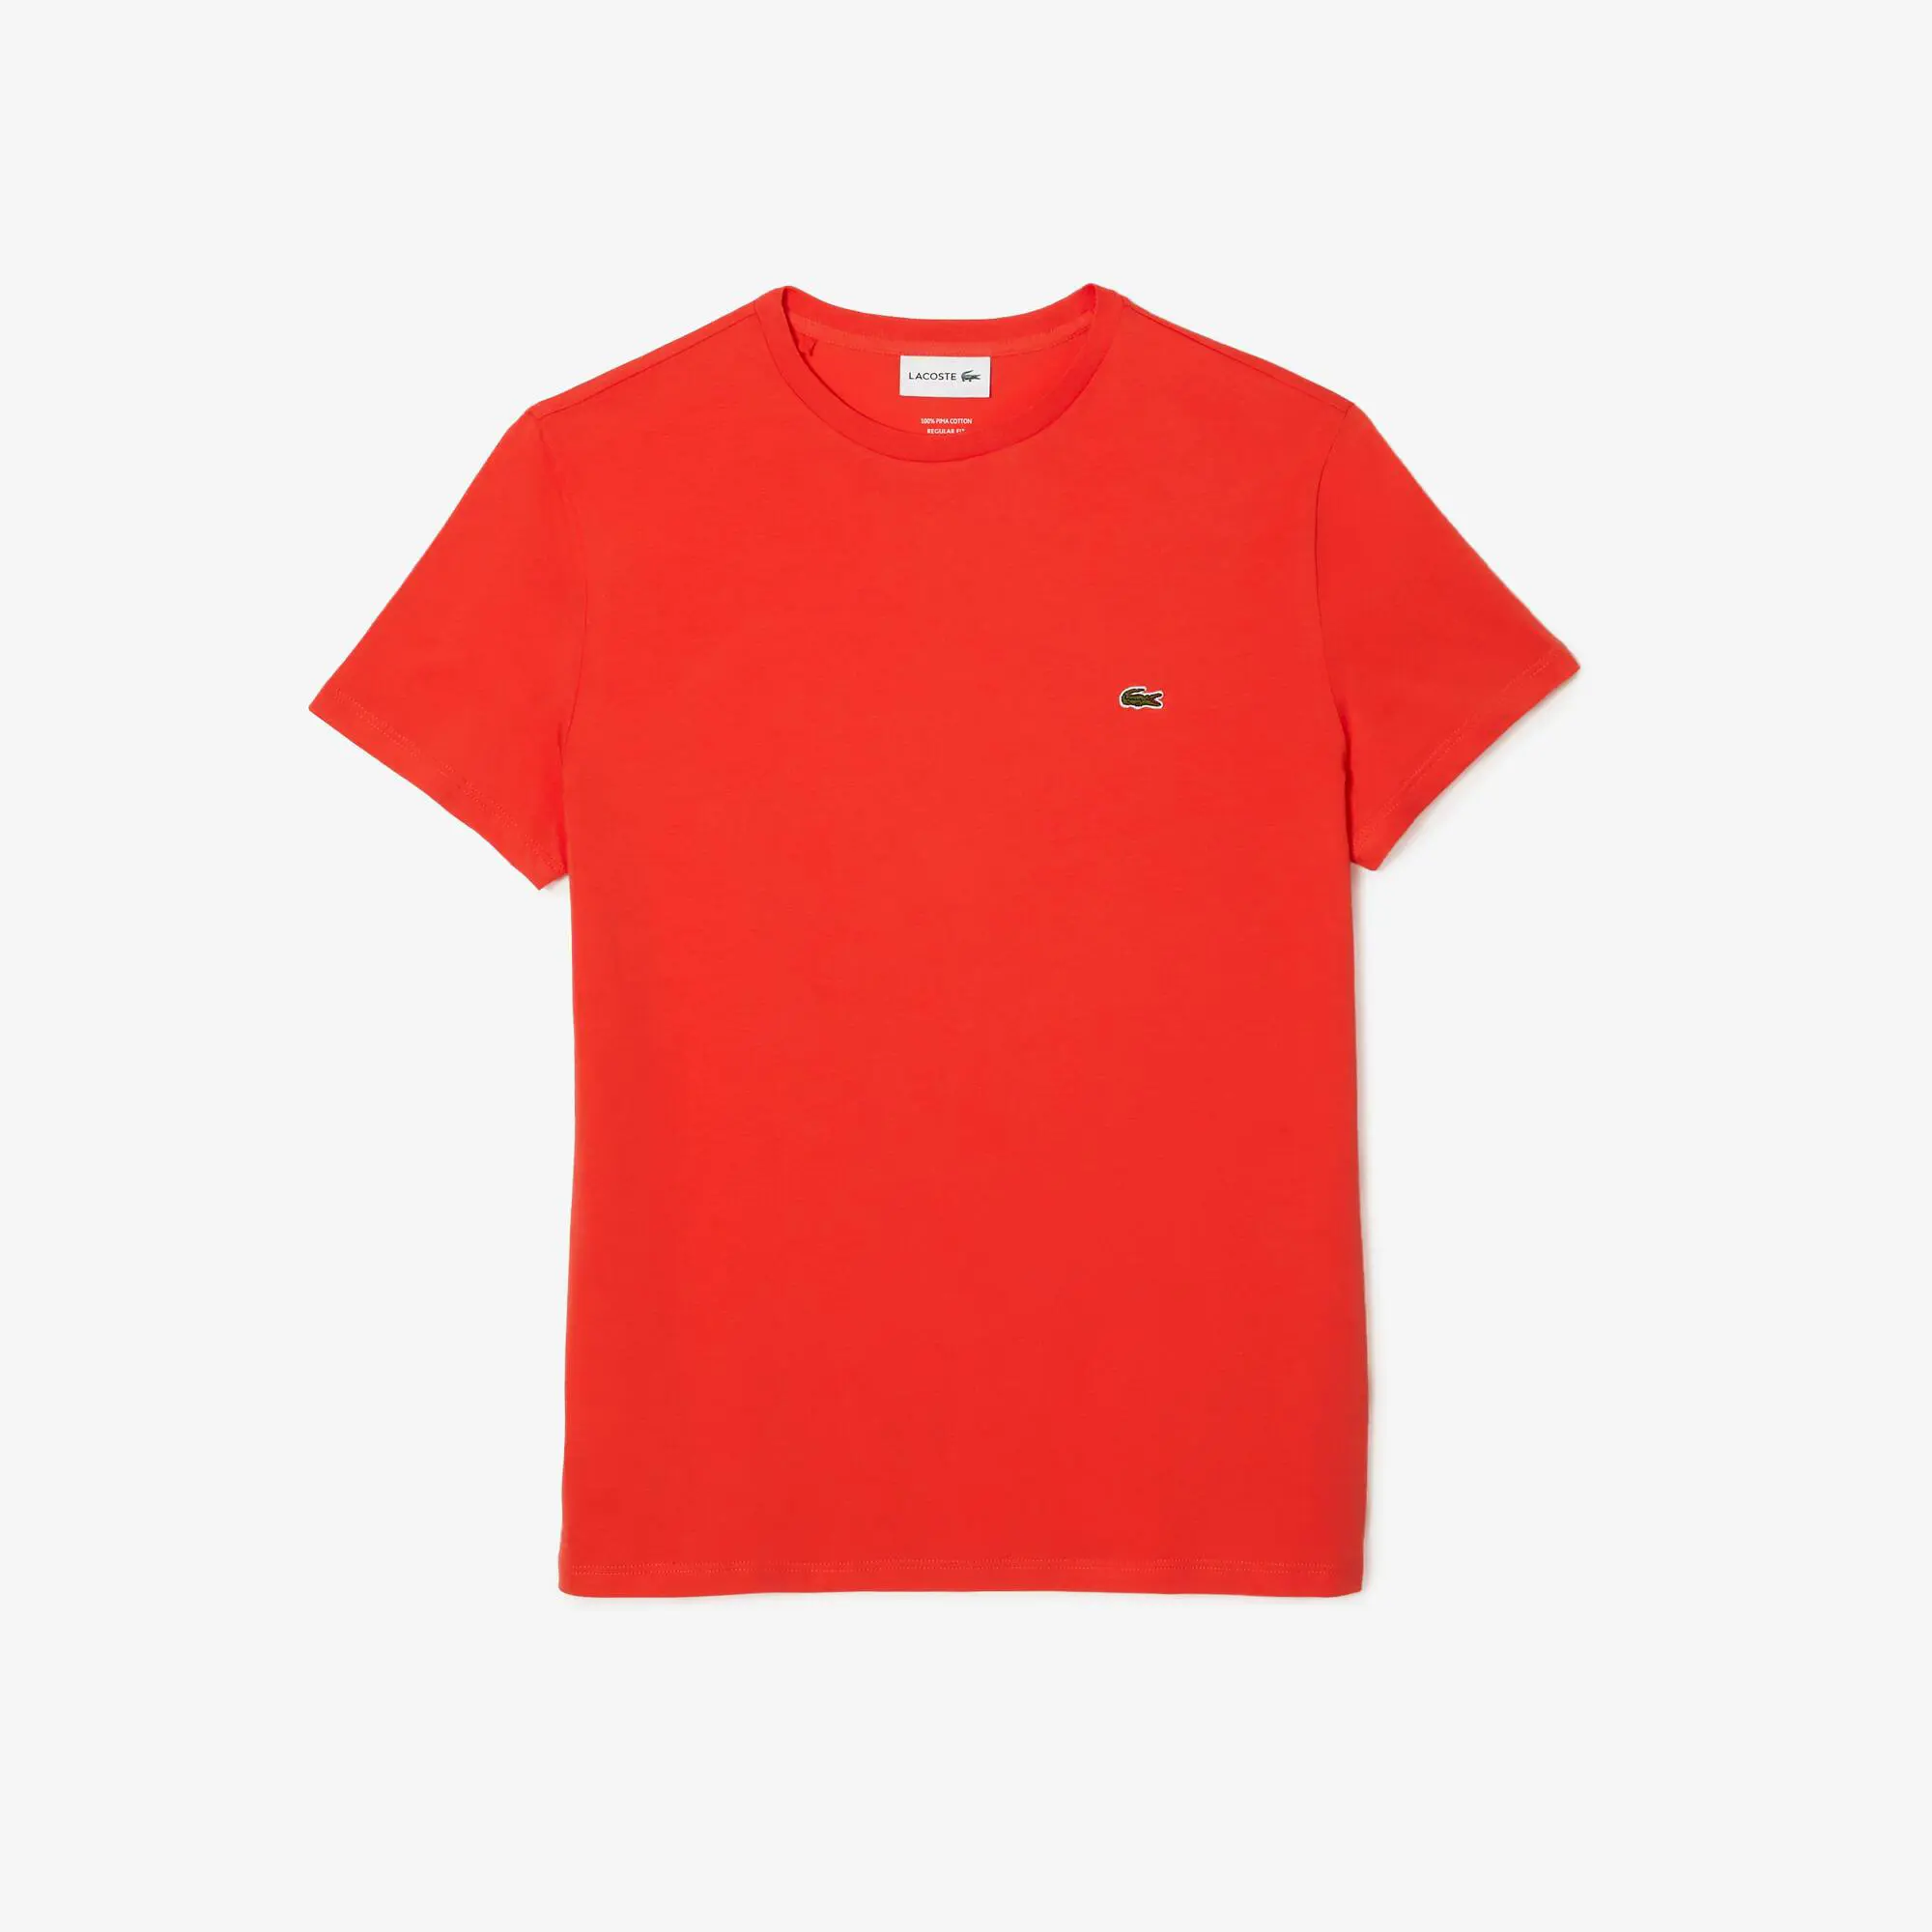 Lacoste T-shirt decote redondo em jersey de algodão pima unicolor. 2